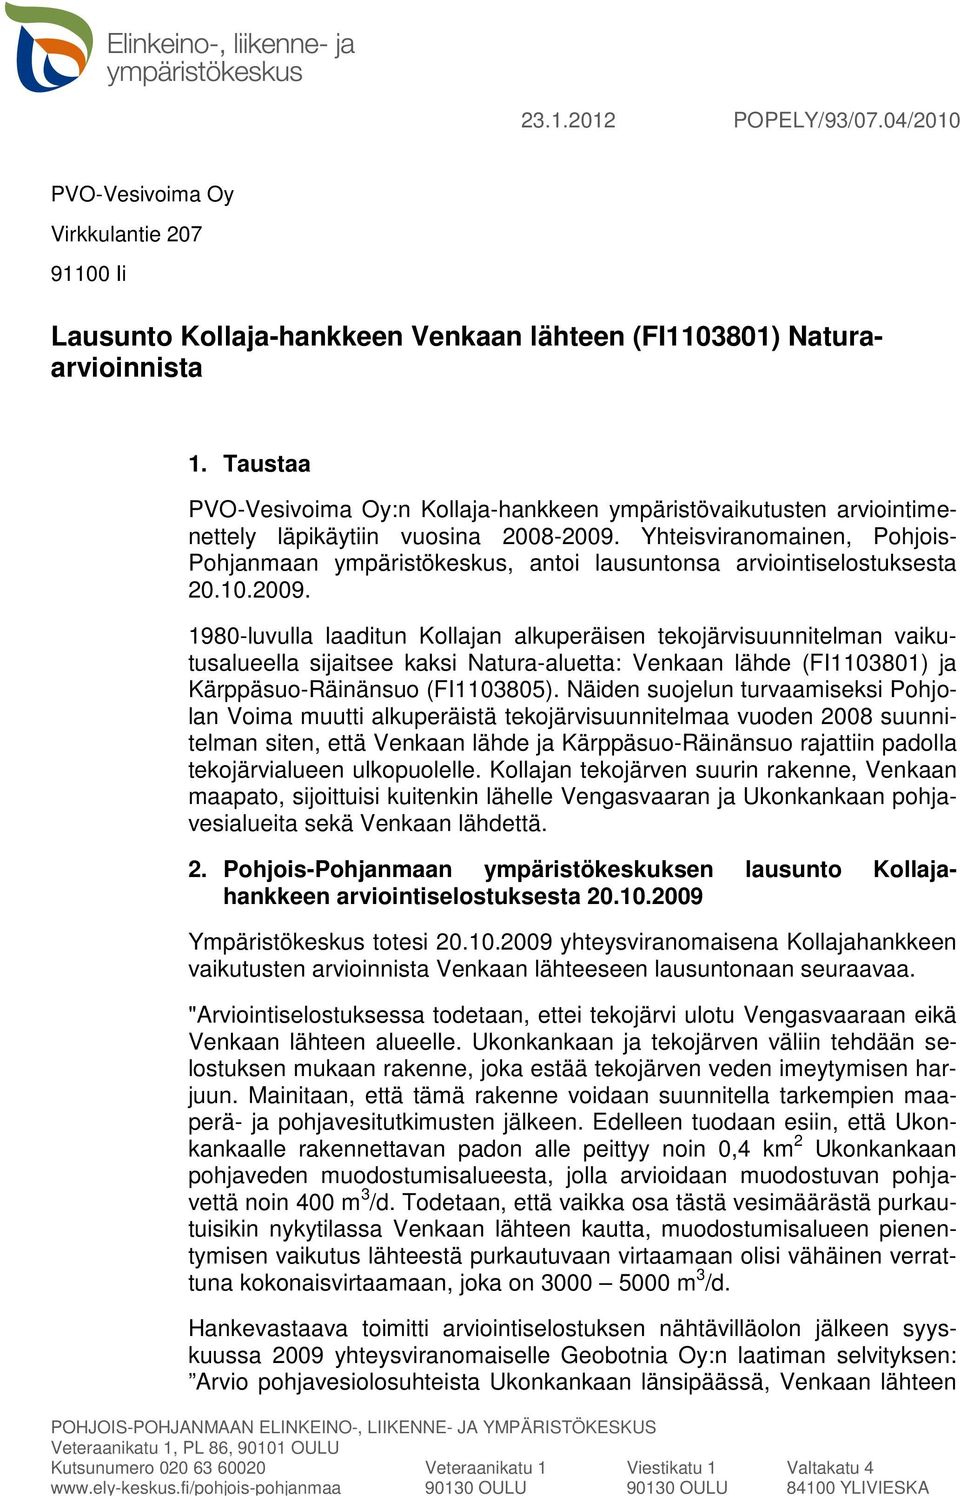 Yhteisviranomainen, Pohjois- Pohjanmaan ympäristökeskus, antoi lausuntonsa arviointiselostuksesta 20.10.2009.